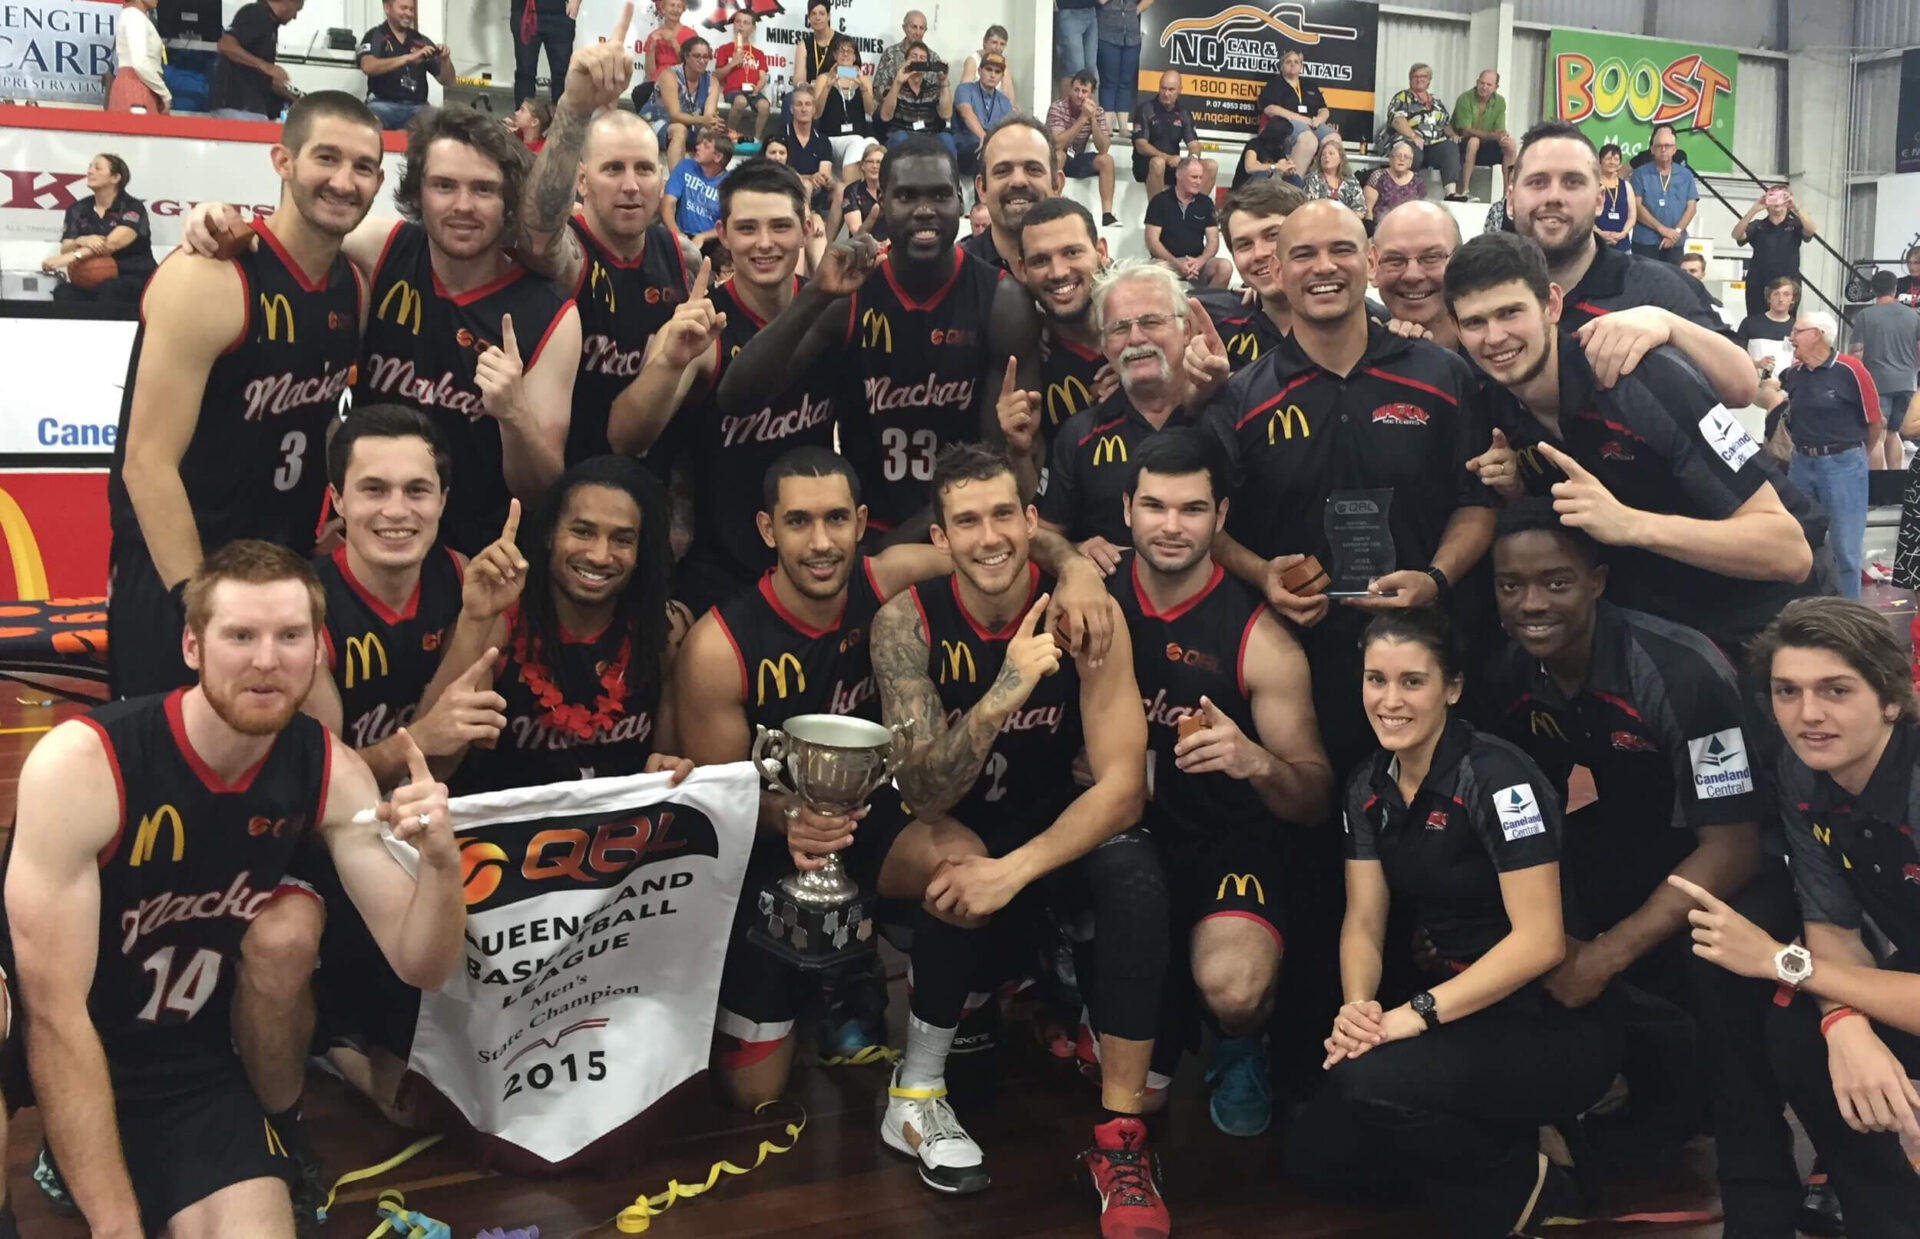 Championship Teams - 2015 McDonald’s Mackay Meteors Overall Record - 18 wins & 3 losses at Mackay Basketball